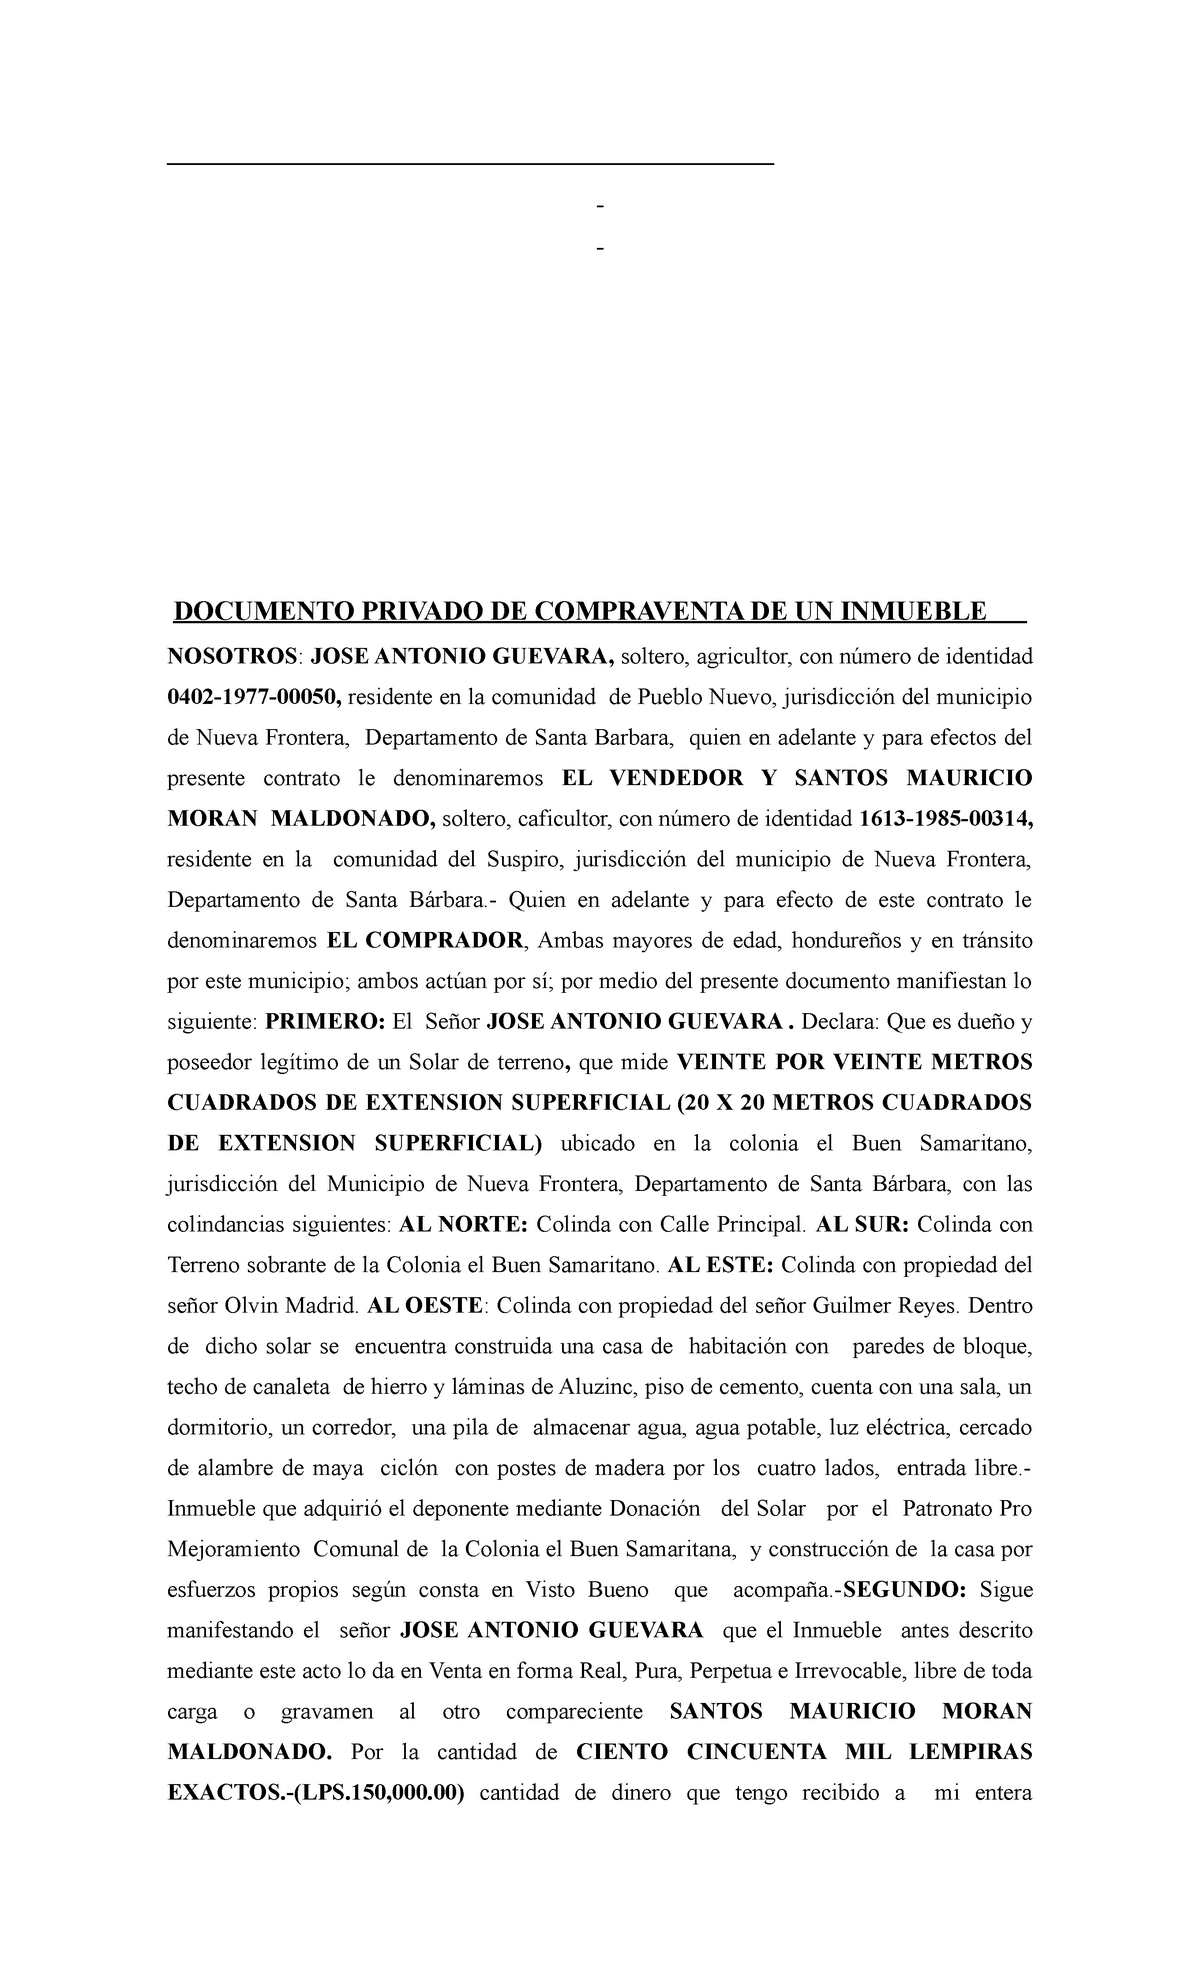 Documento De Compra Y Venta De Un Inmueble En El Area Notarial Documento Privado De 0346